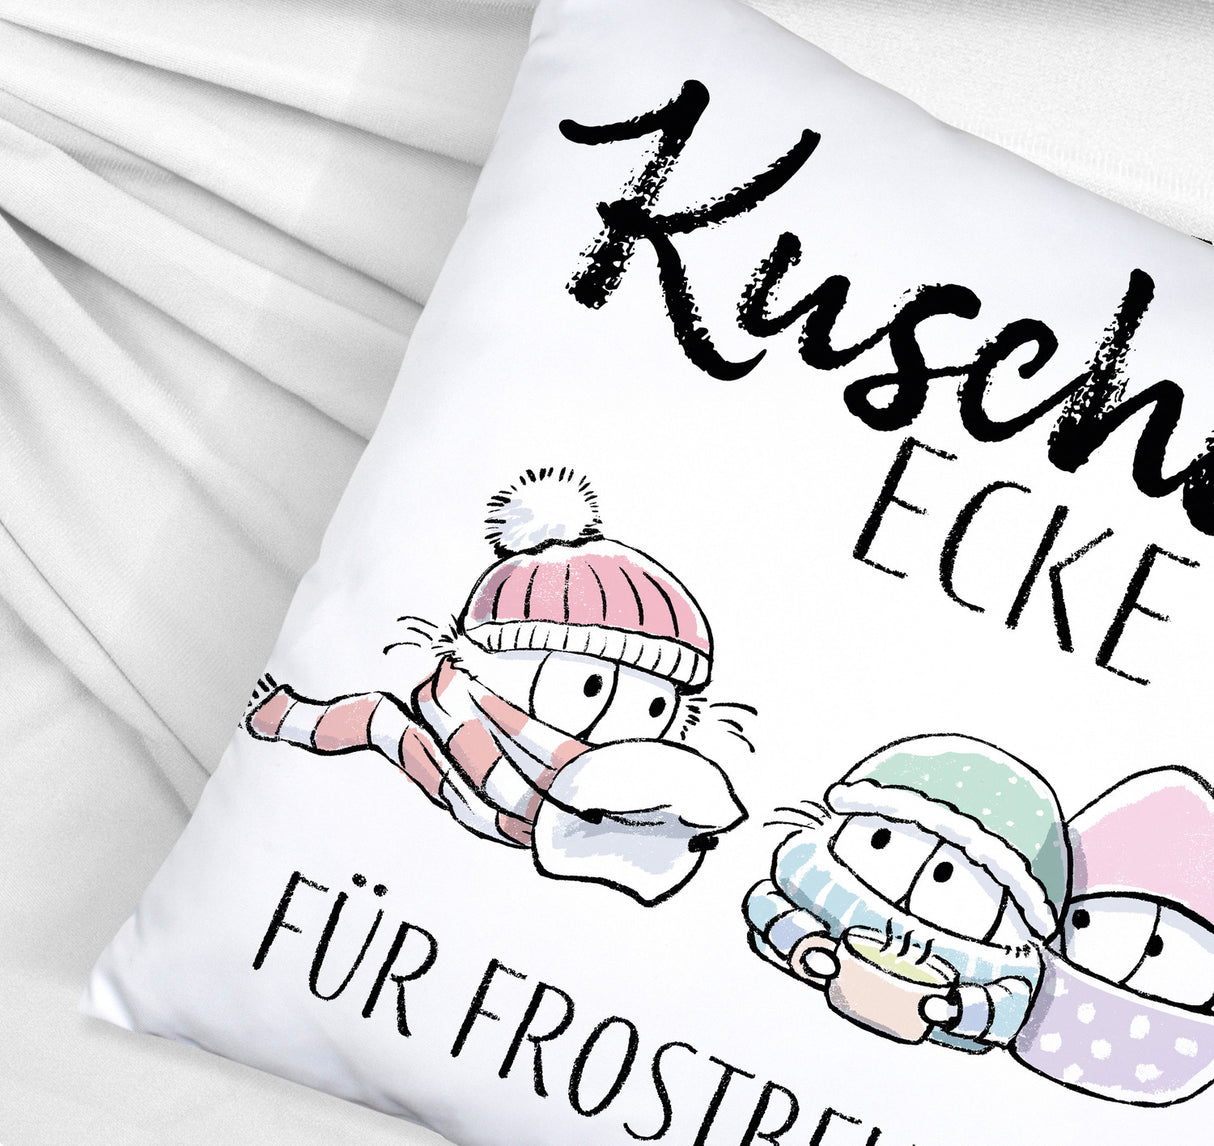 Frostbeule Kissen mit Spruch Kuschelecke für Frostbeulen